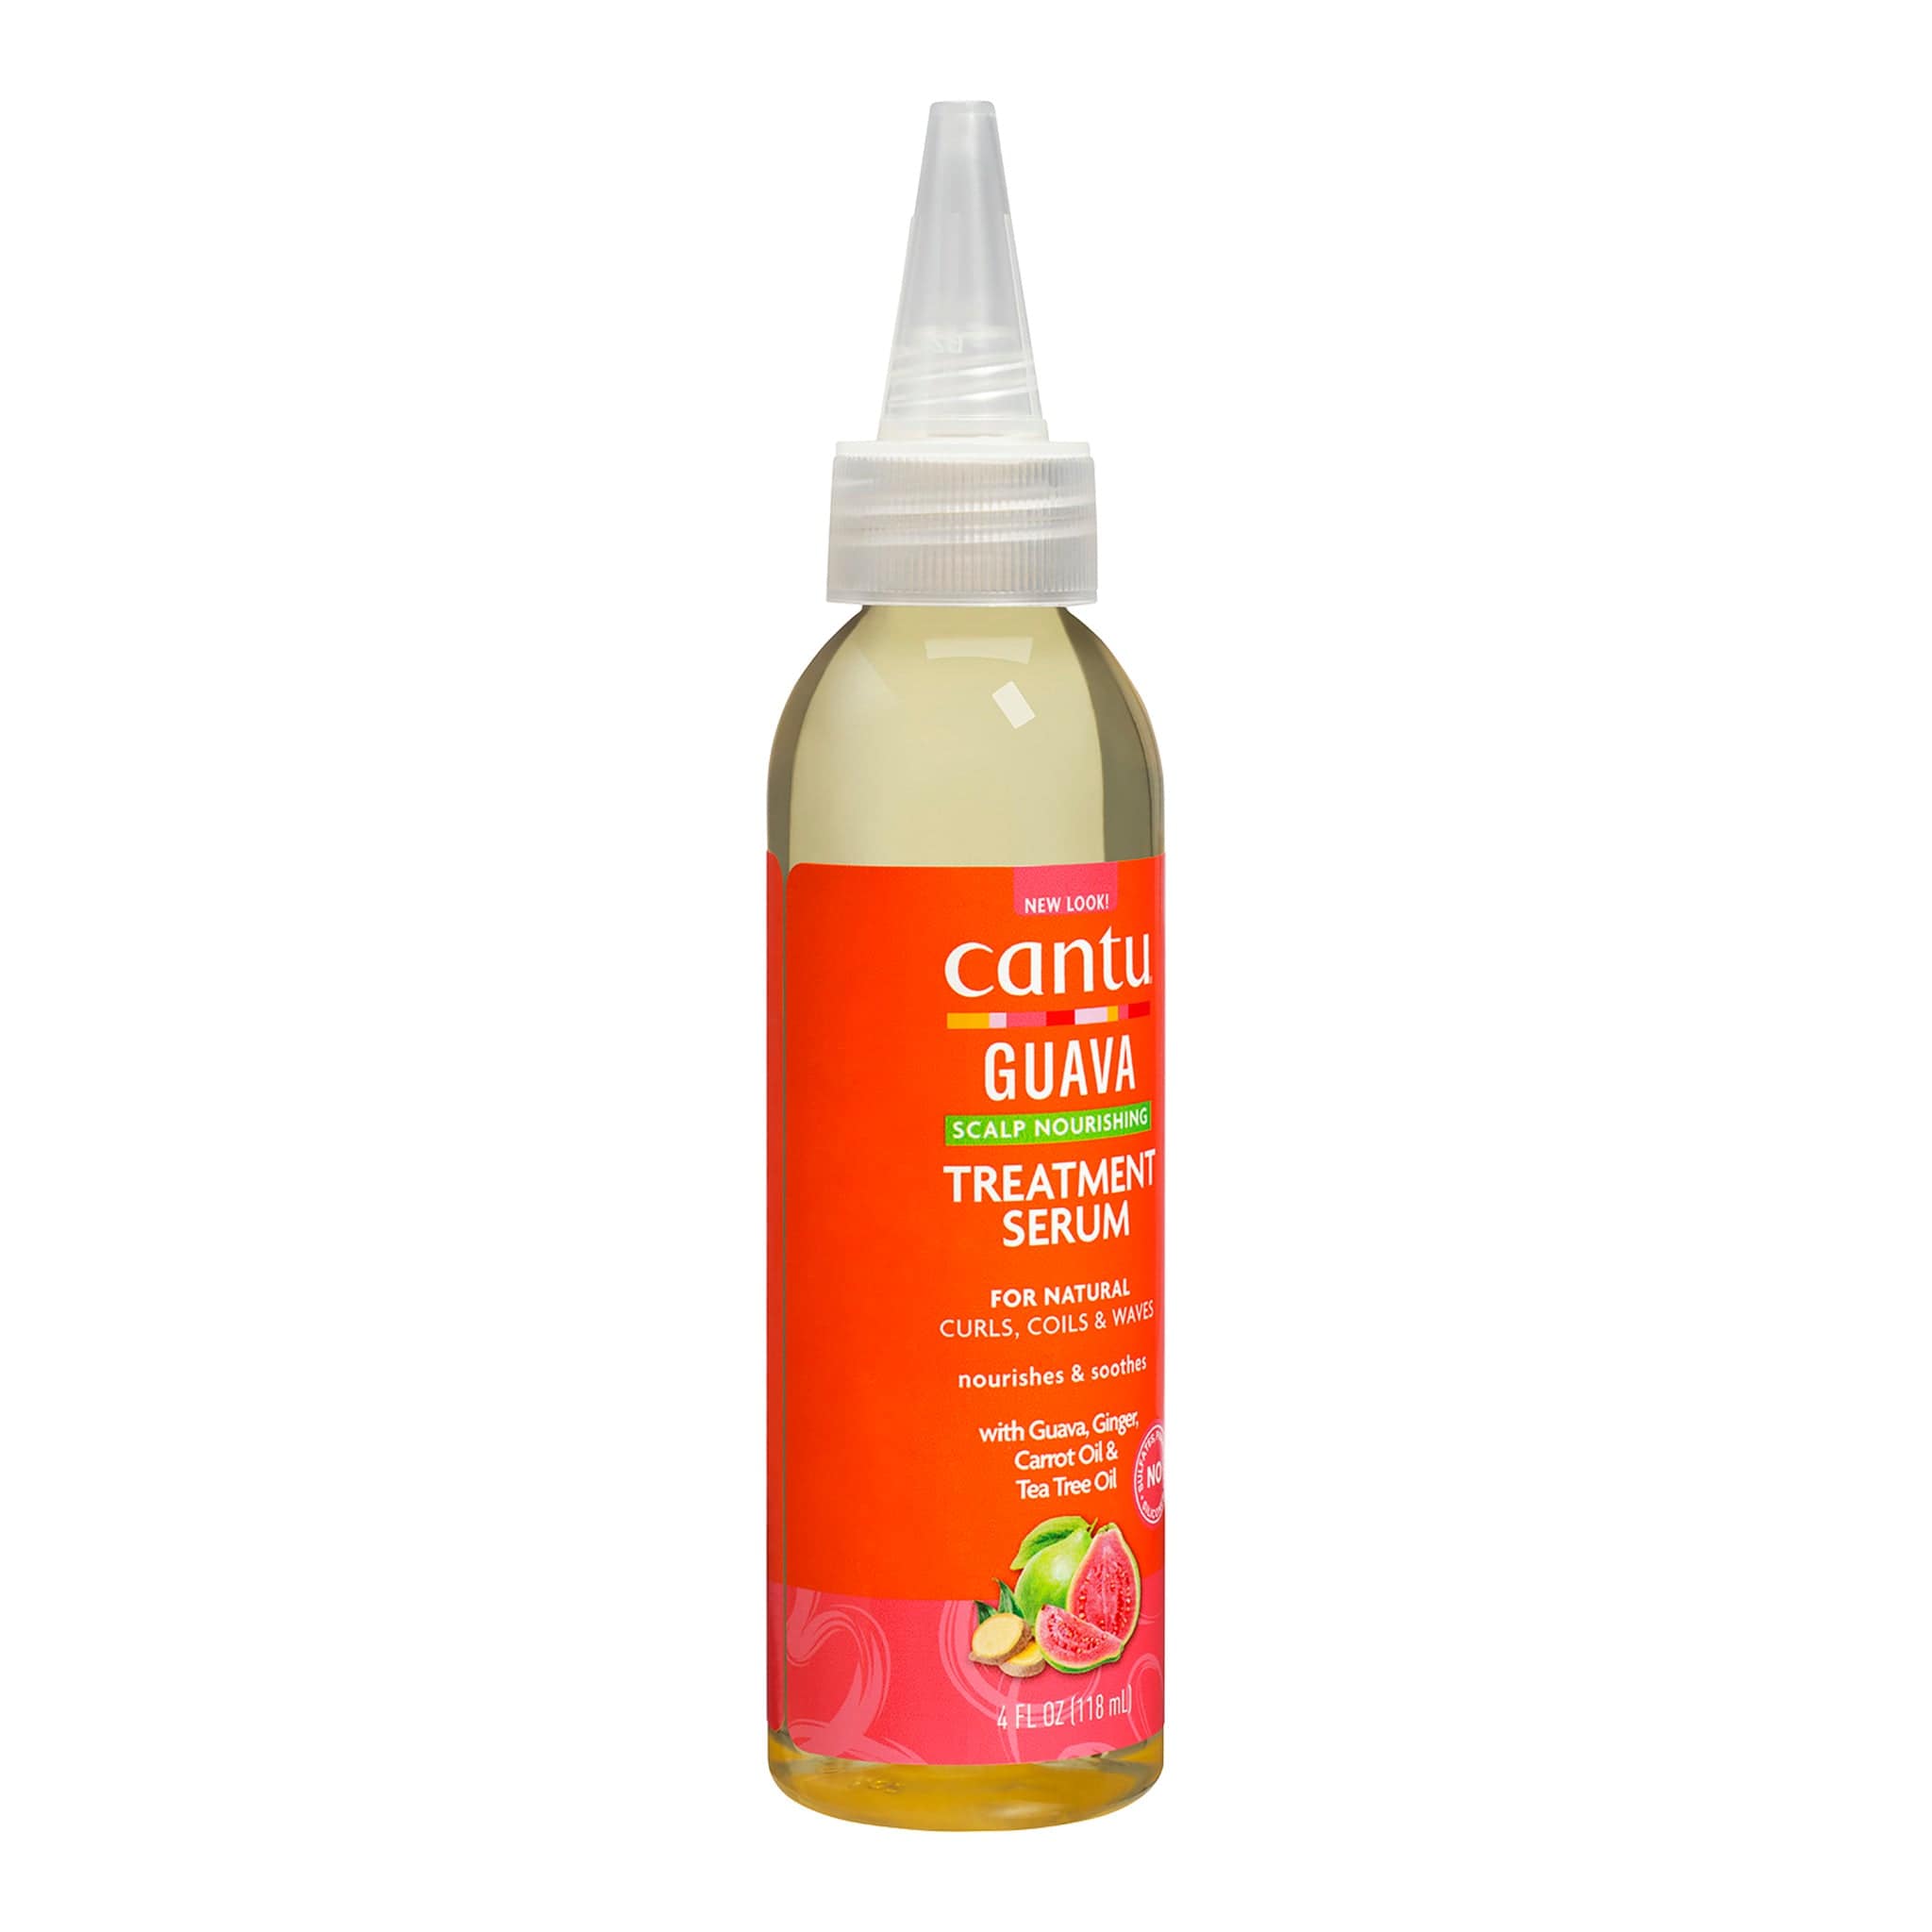 Cantu Guava & Ginger Carrot Oil Spot Treatment Serum 118 ML